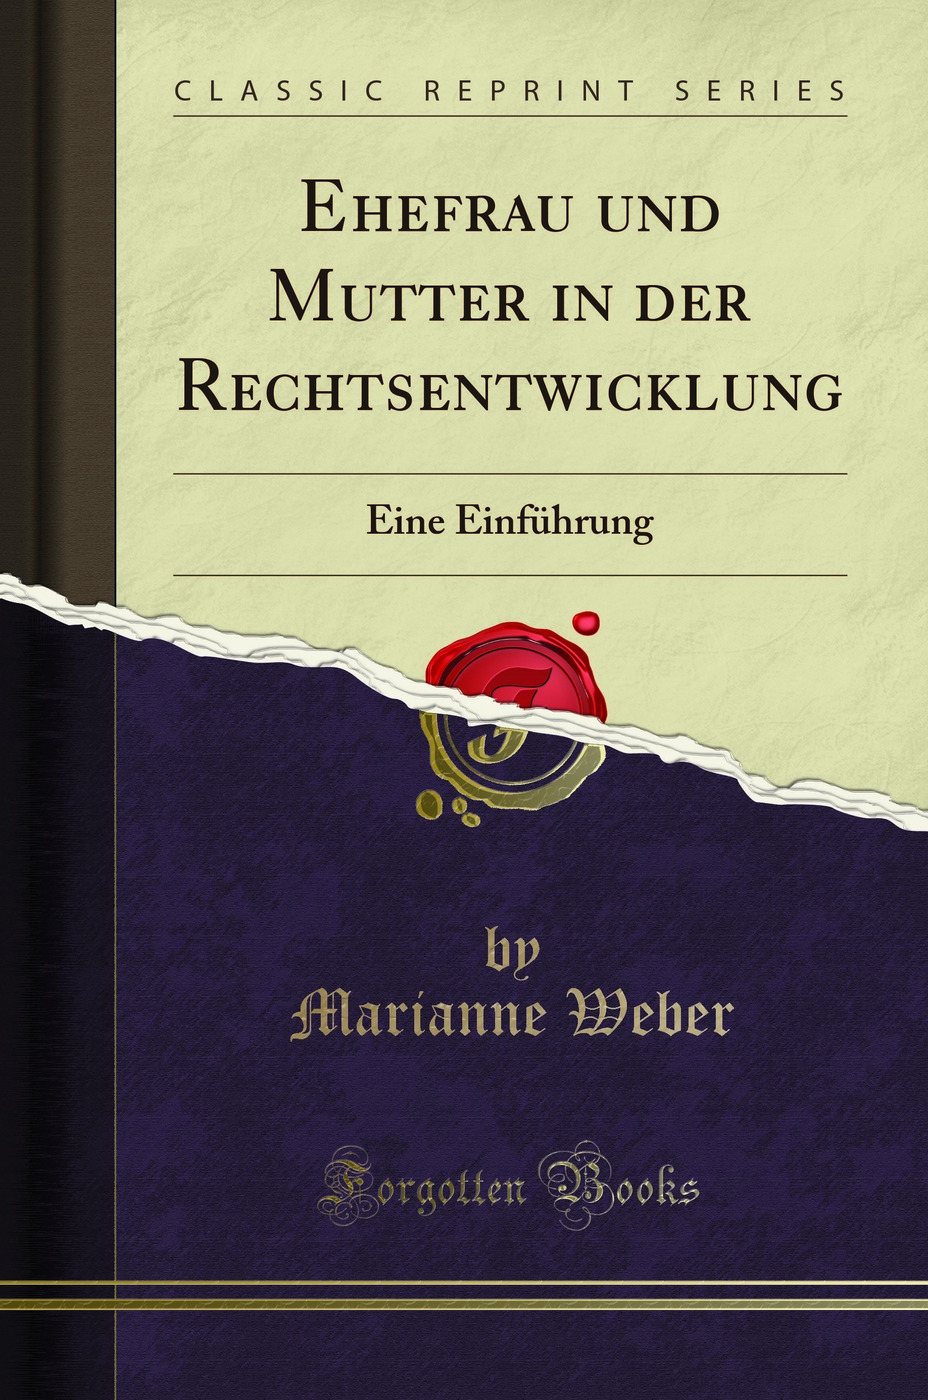 Ehefrau und Mutter in der Rechtsentwicklung: Eine EinfÃ¼hrung (Classic Reprint) - Marianne Weber